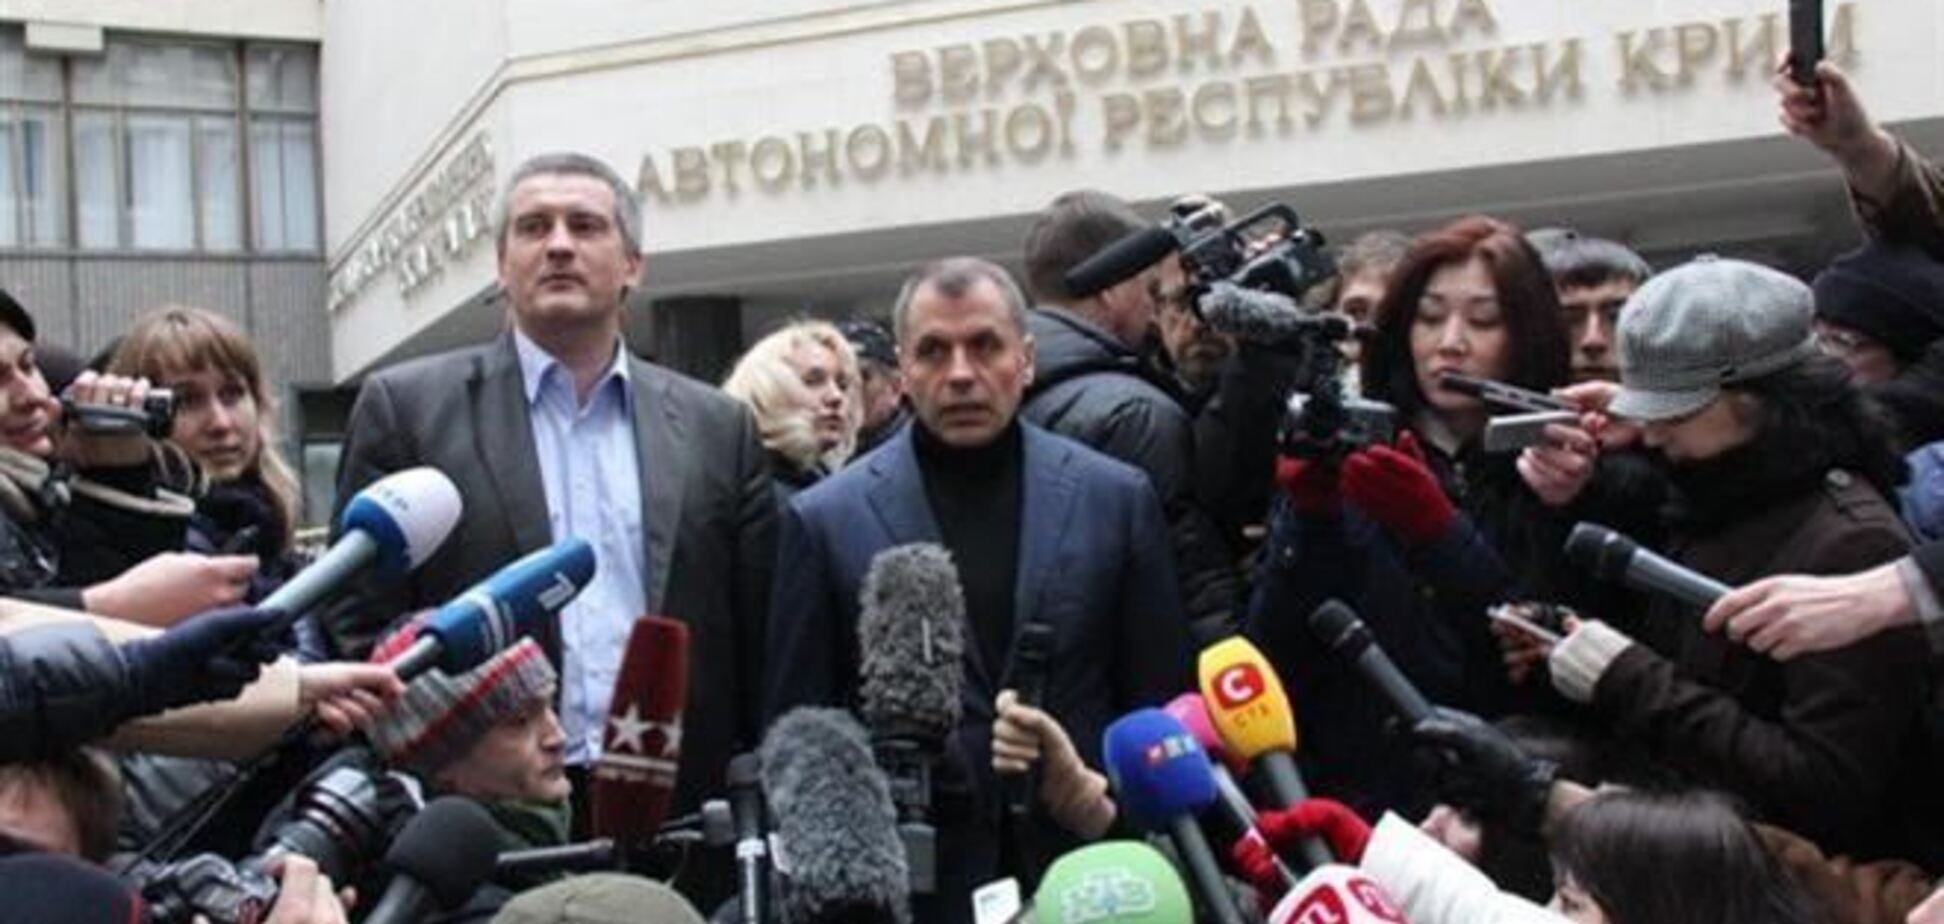 Константинов терміново скликає сесію кримського парламенту - ЗМІ